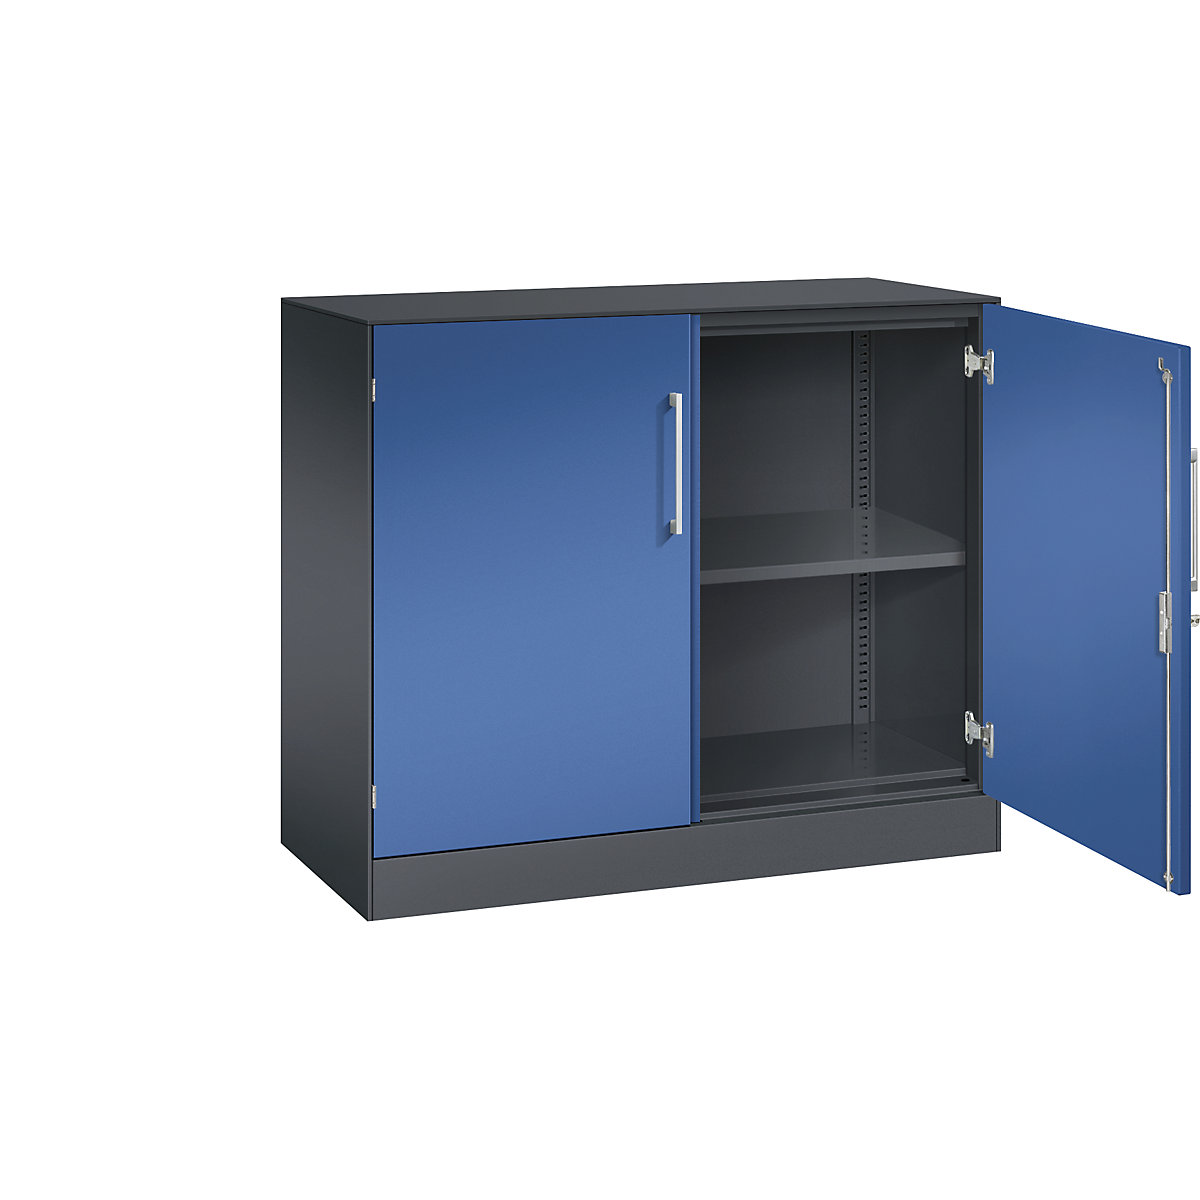 ASISTO double door cupboard, height 897 mm – C+P, width 1000 mm, 1 shelf, black grey/gentian blue-10